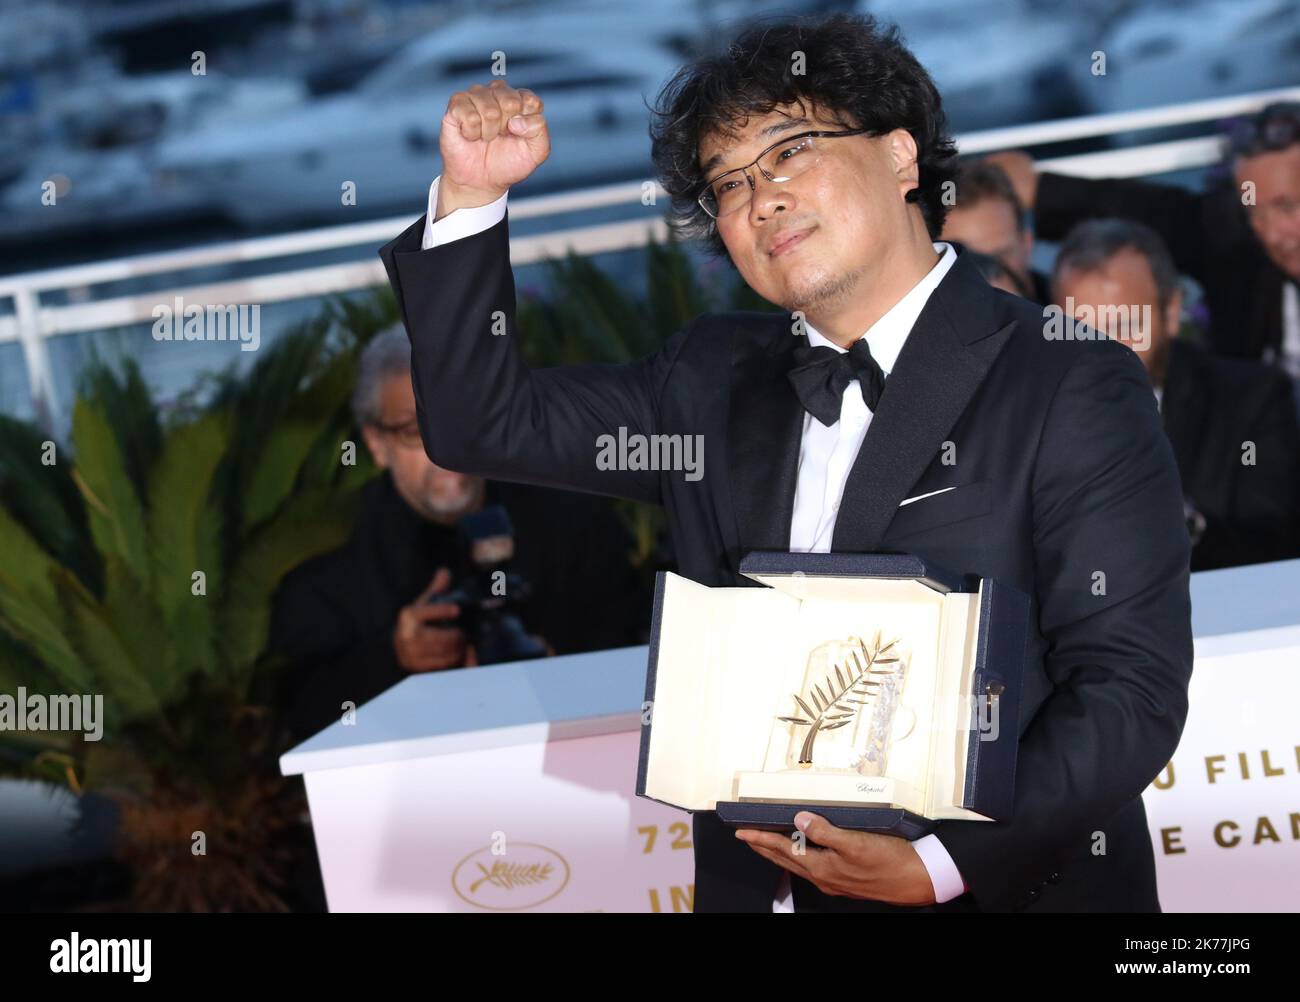 Der südkoreanische Regisseur Bong Joon-Ho posiert während einer Fotozelle mit seiner Trophäe, nachdem er die Palme d'Or für den Film 'Parasite (Gisaengchung)' gewonnen hat. Stockfoto